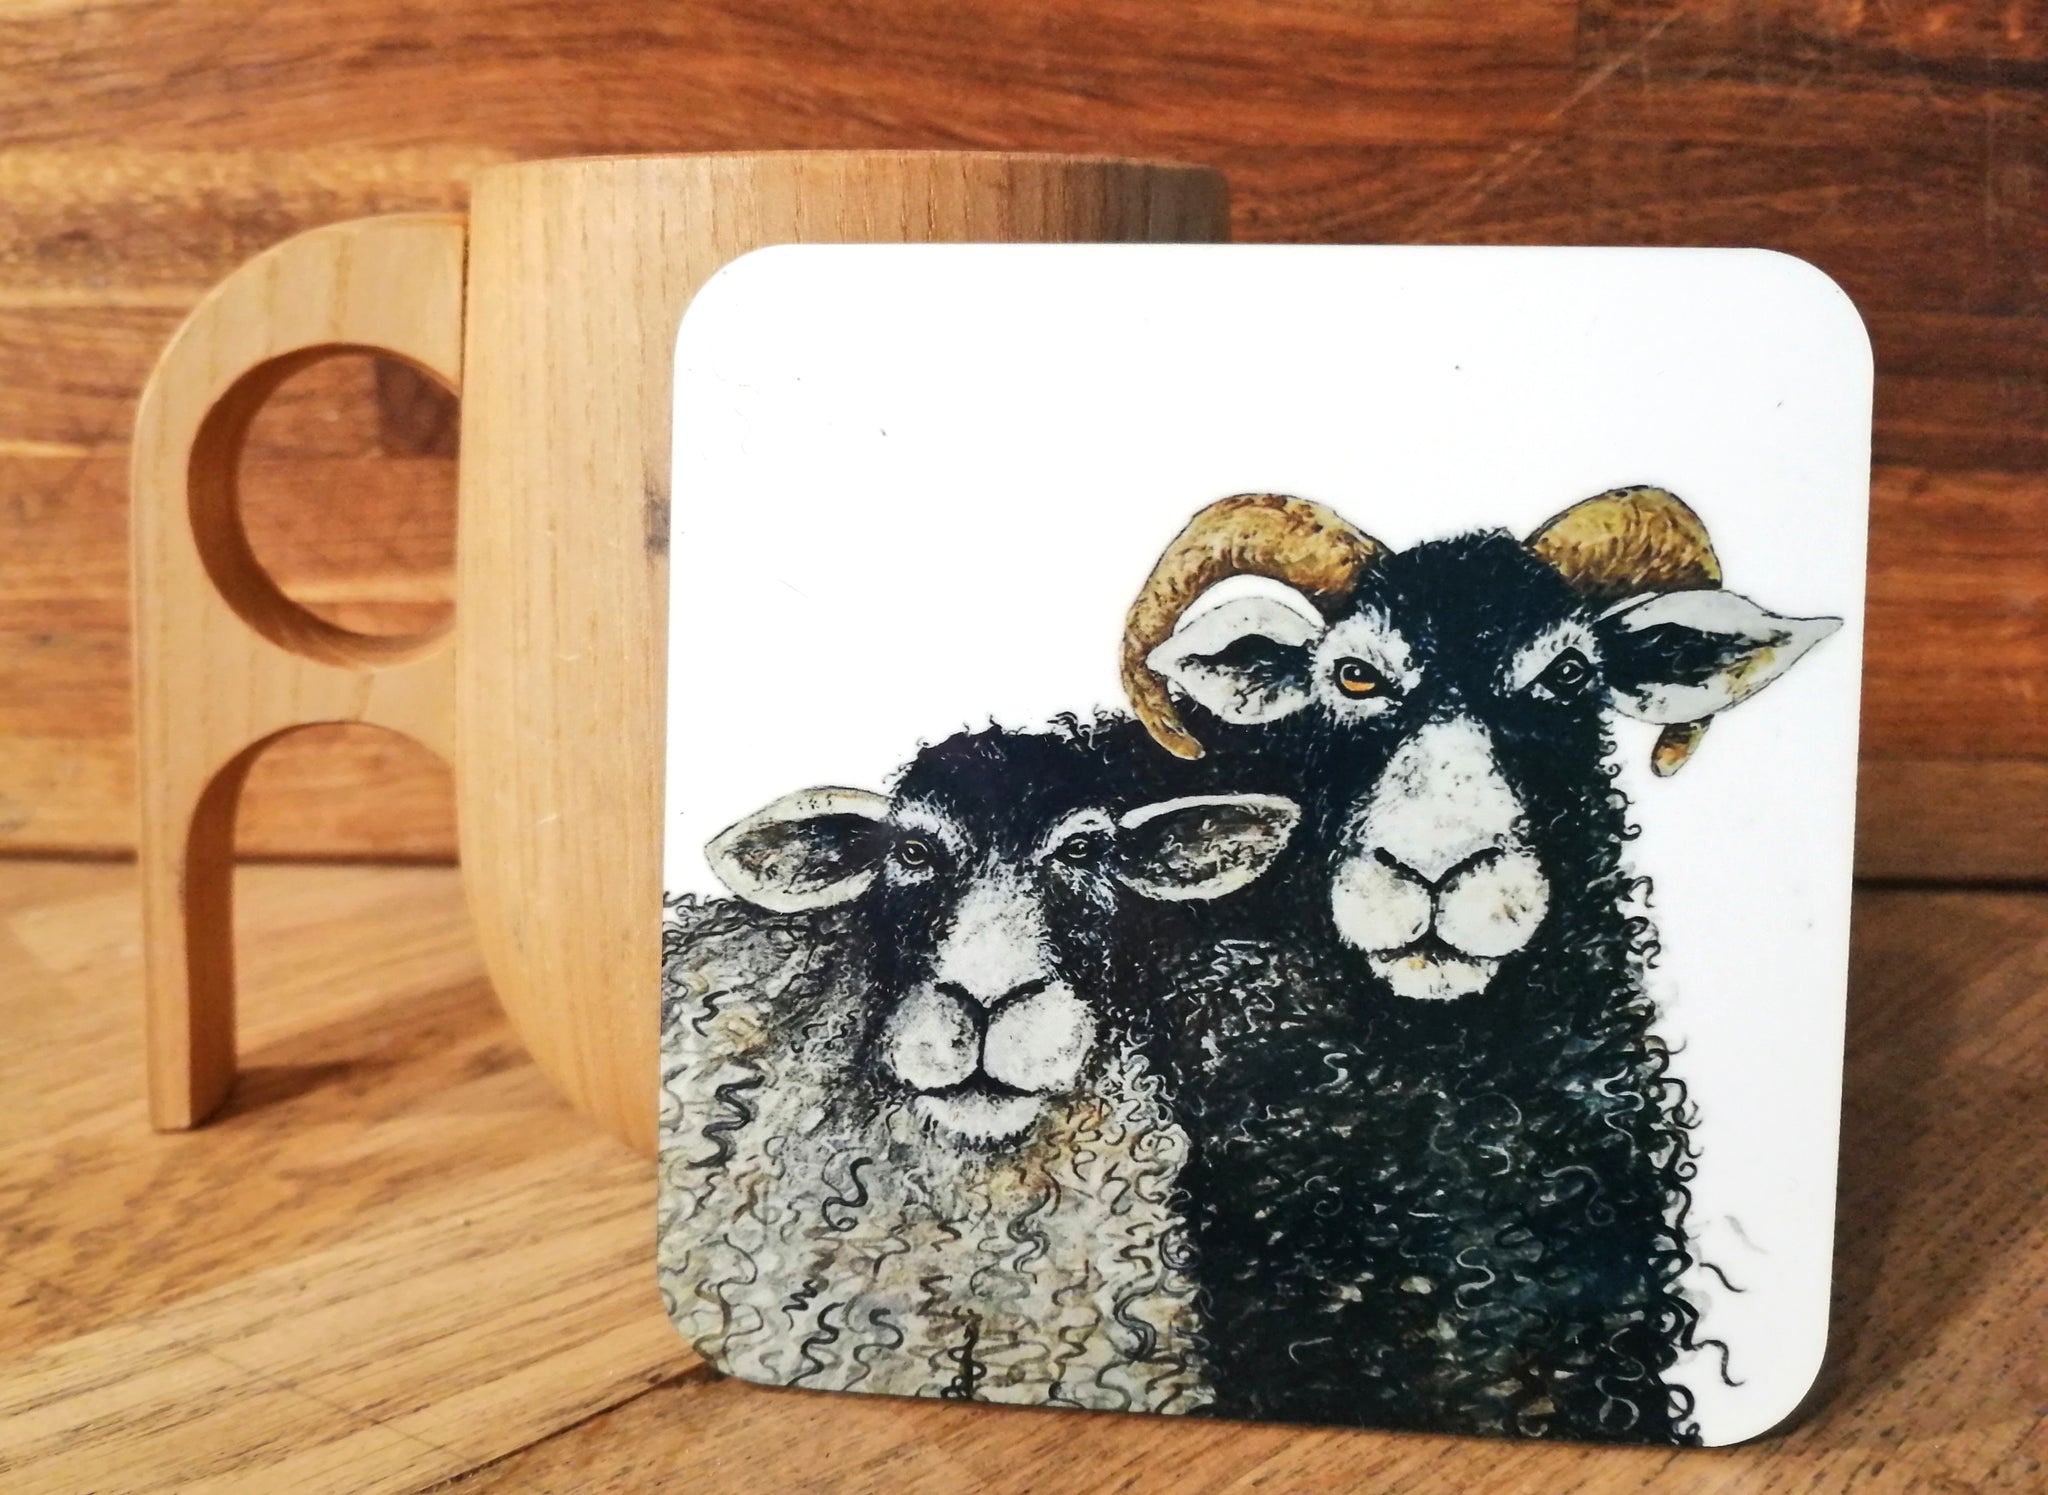 Baa sheep. Smiley Coaster.